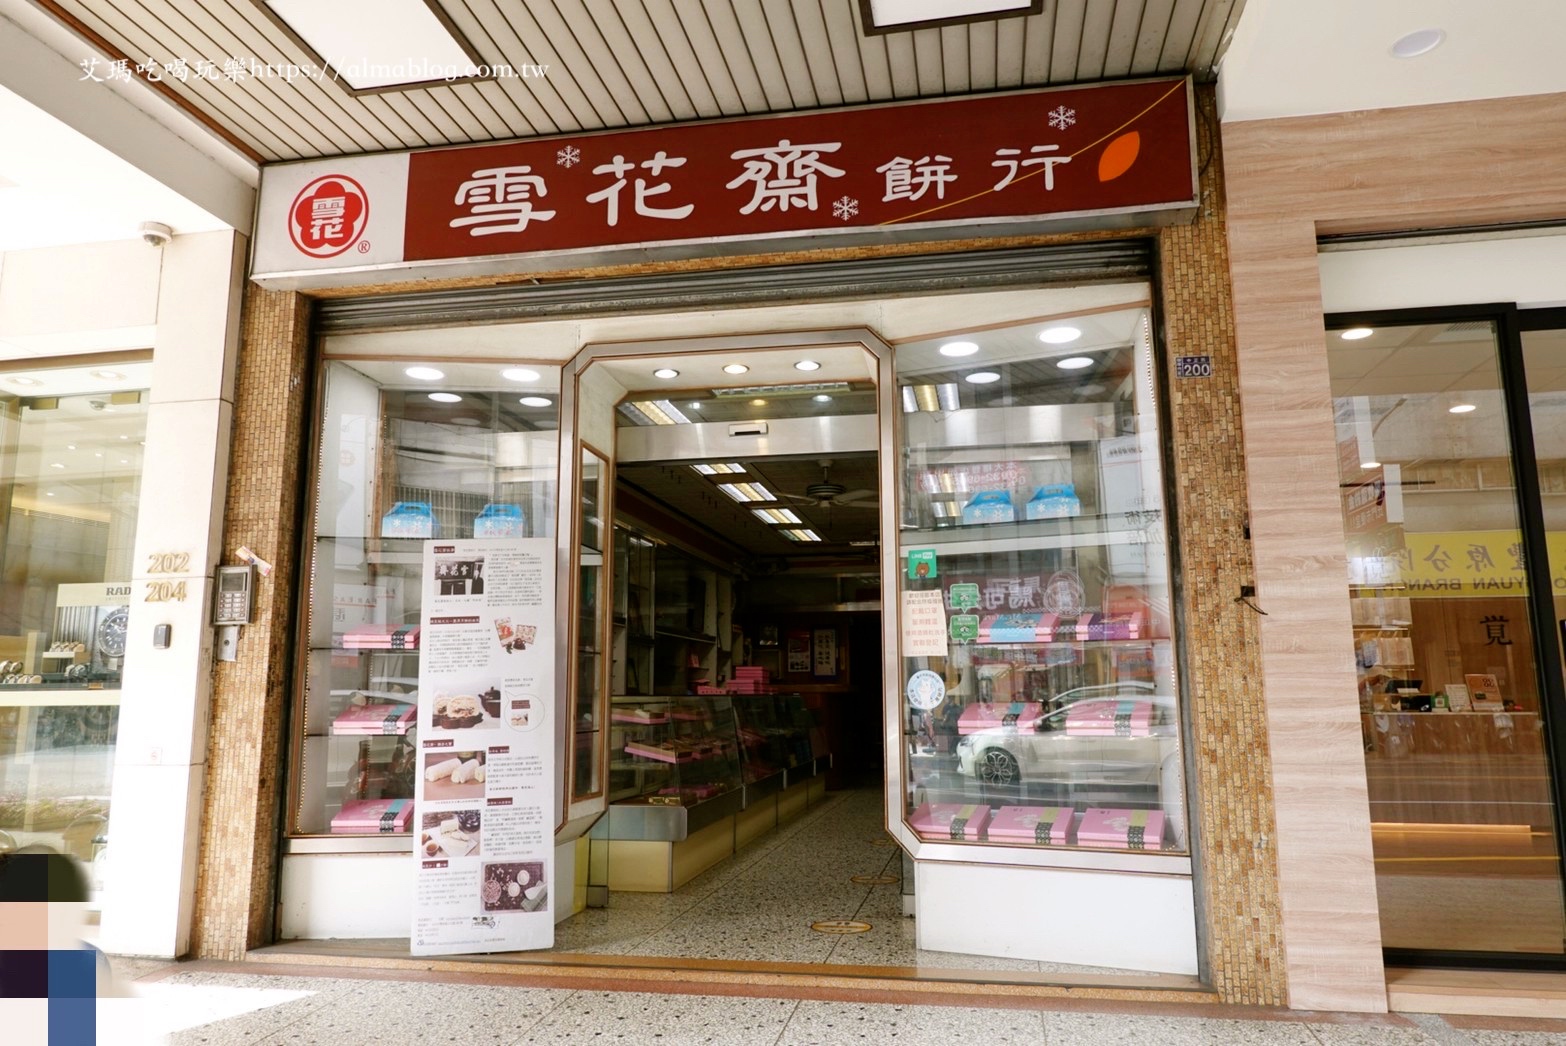 雪花齋餅行豐原總店